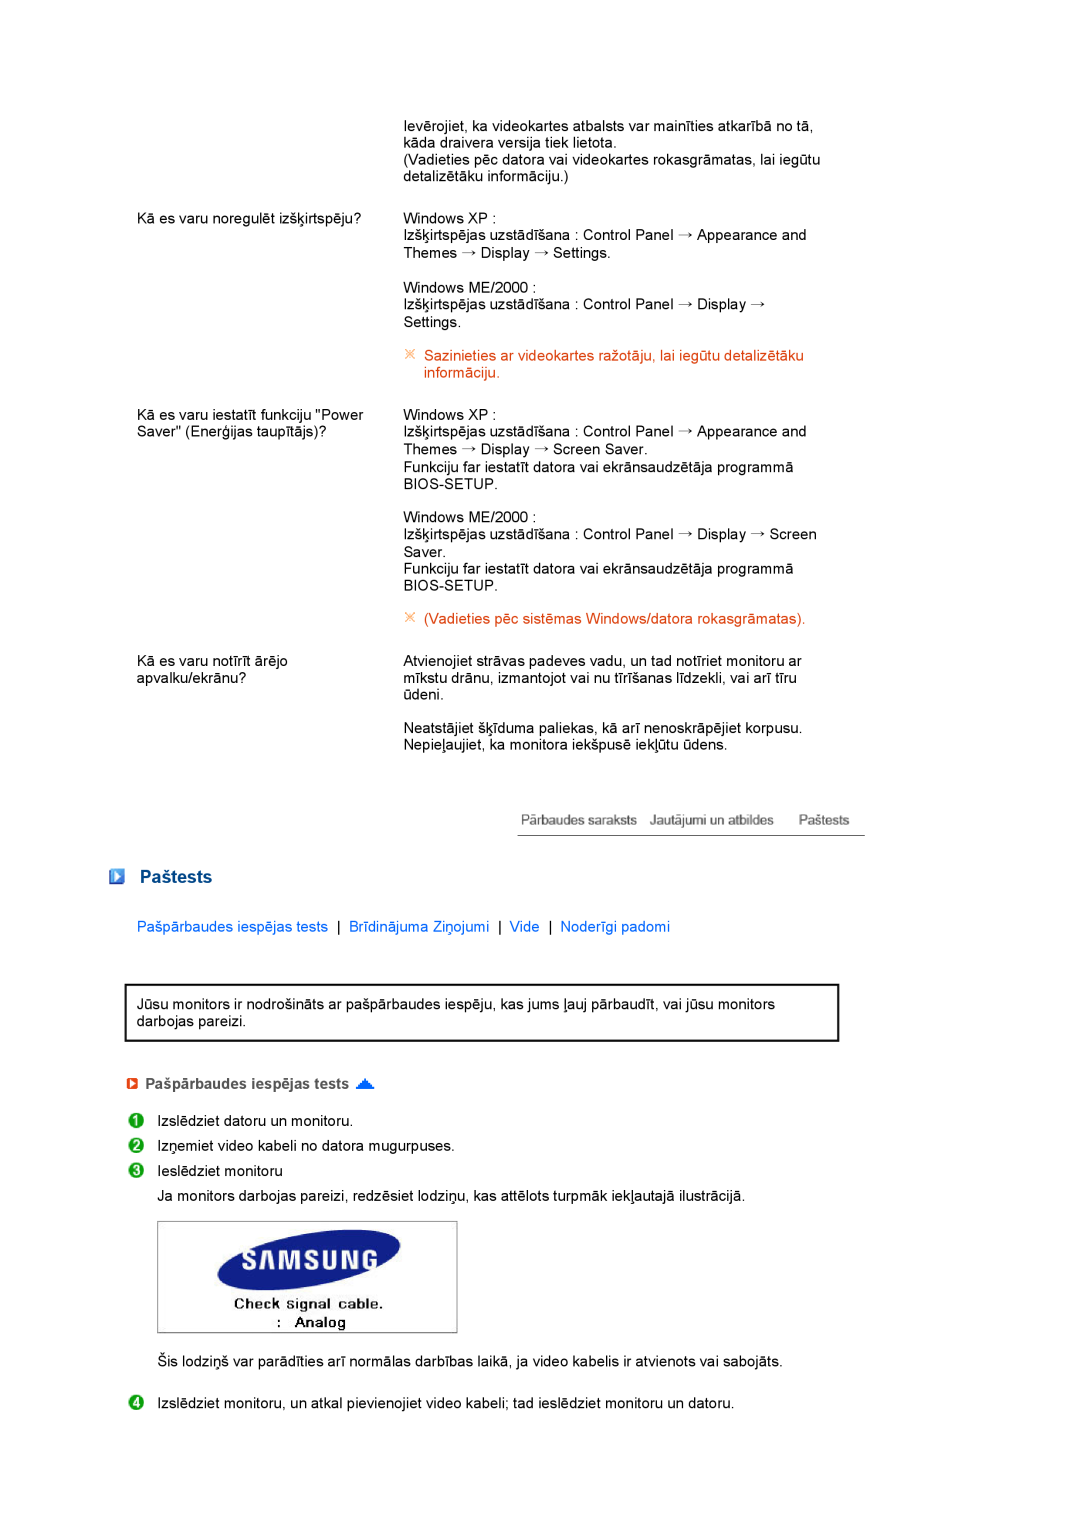 Samsung LS27HUBCB/EDC manual Paštests, Vadieties pēc sistēmas Windows/datora rokasgrāmatas, Pašpārbaudes iespējas tests 